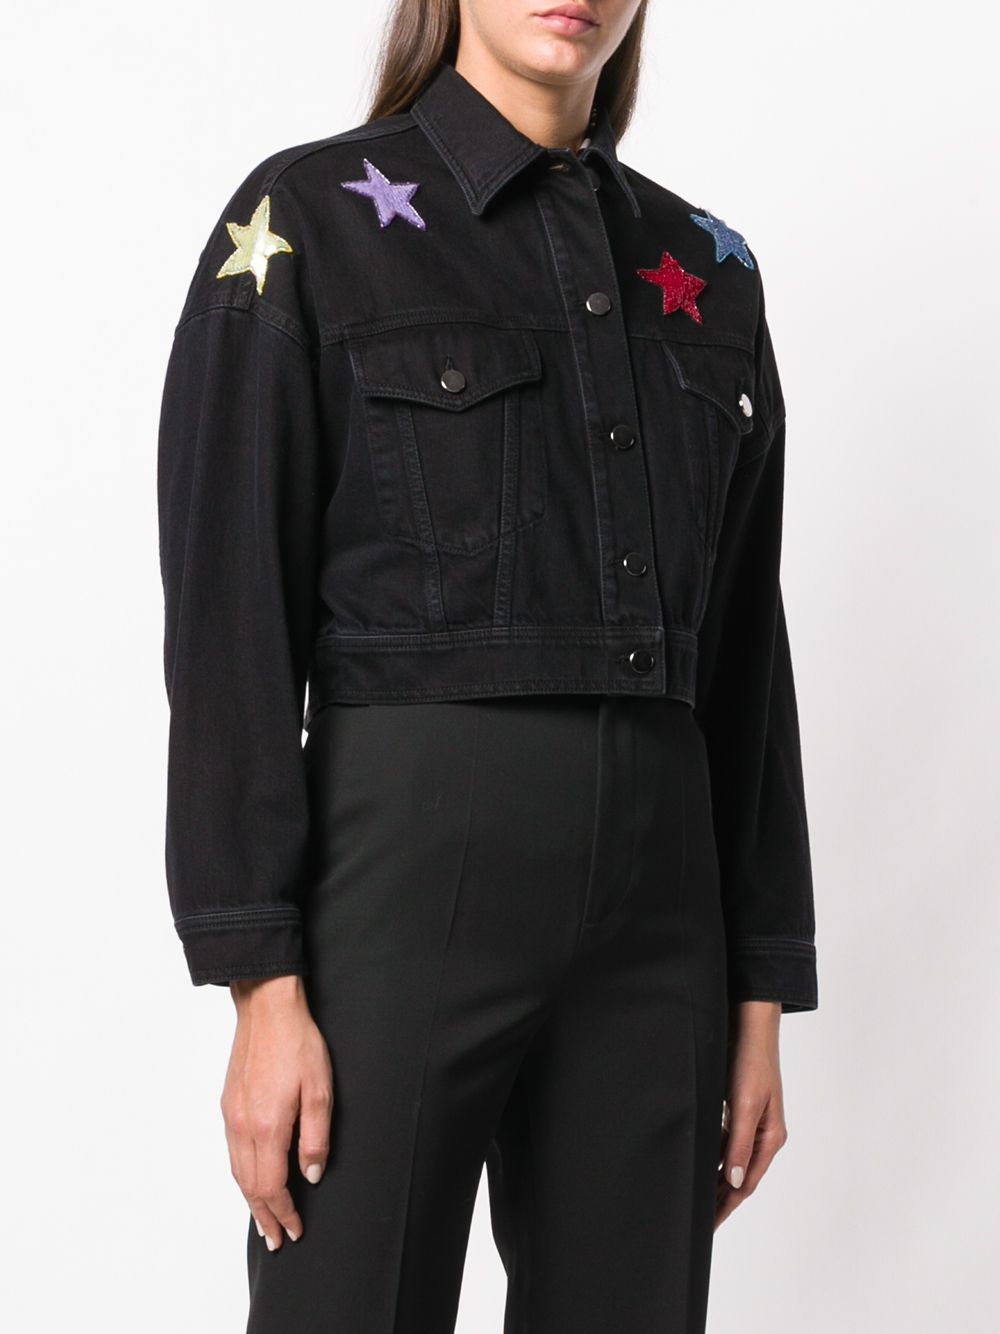 фото Valentino джинсовая куртка с вышивкой пайетками в форме звезд